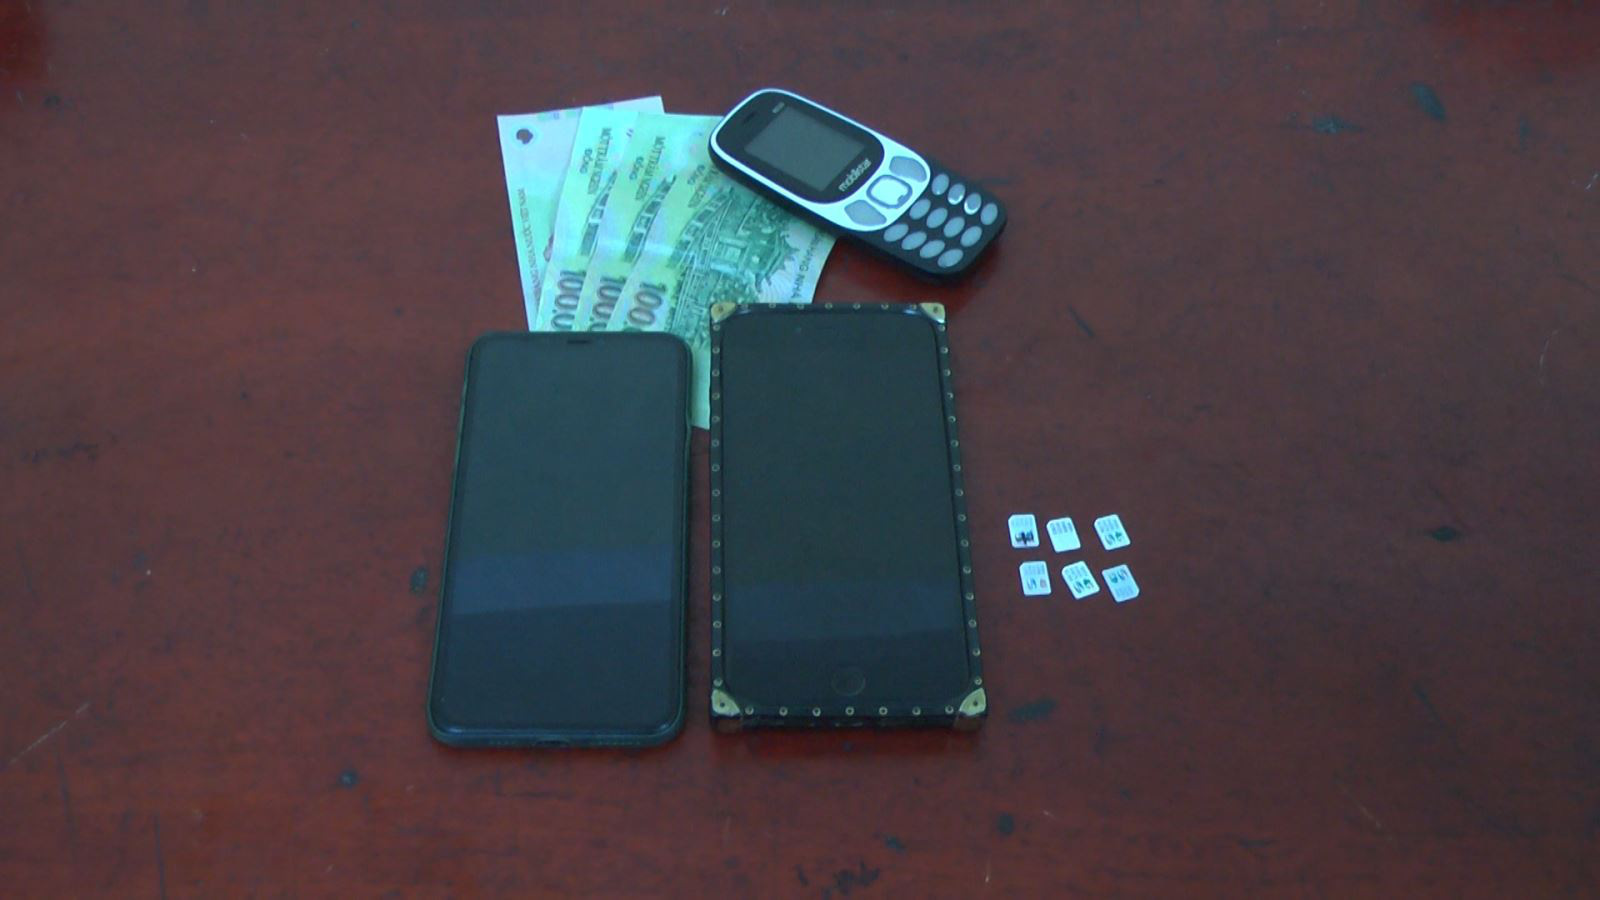 Hưng Yên: Cô gái trẻ giả vờ mua hàng rồi cướp điện thoại của hai thiếu niên - Ảnh 1